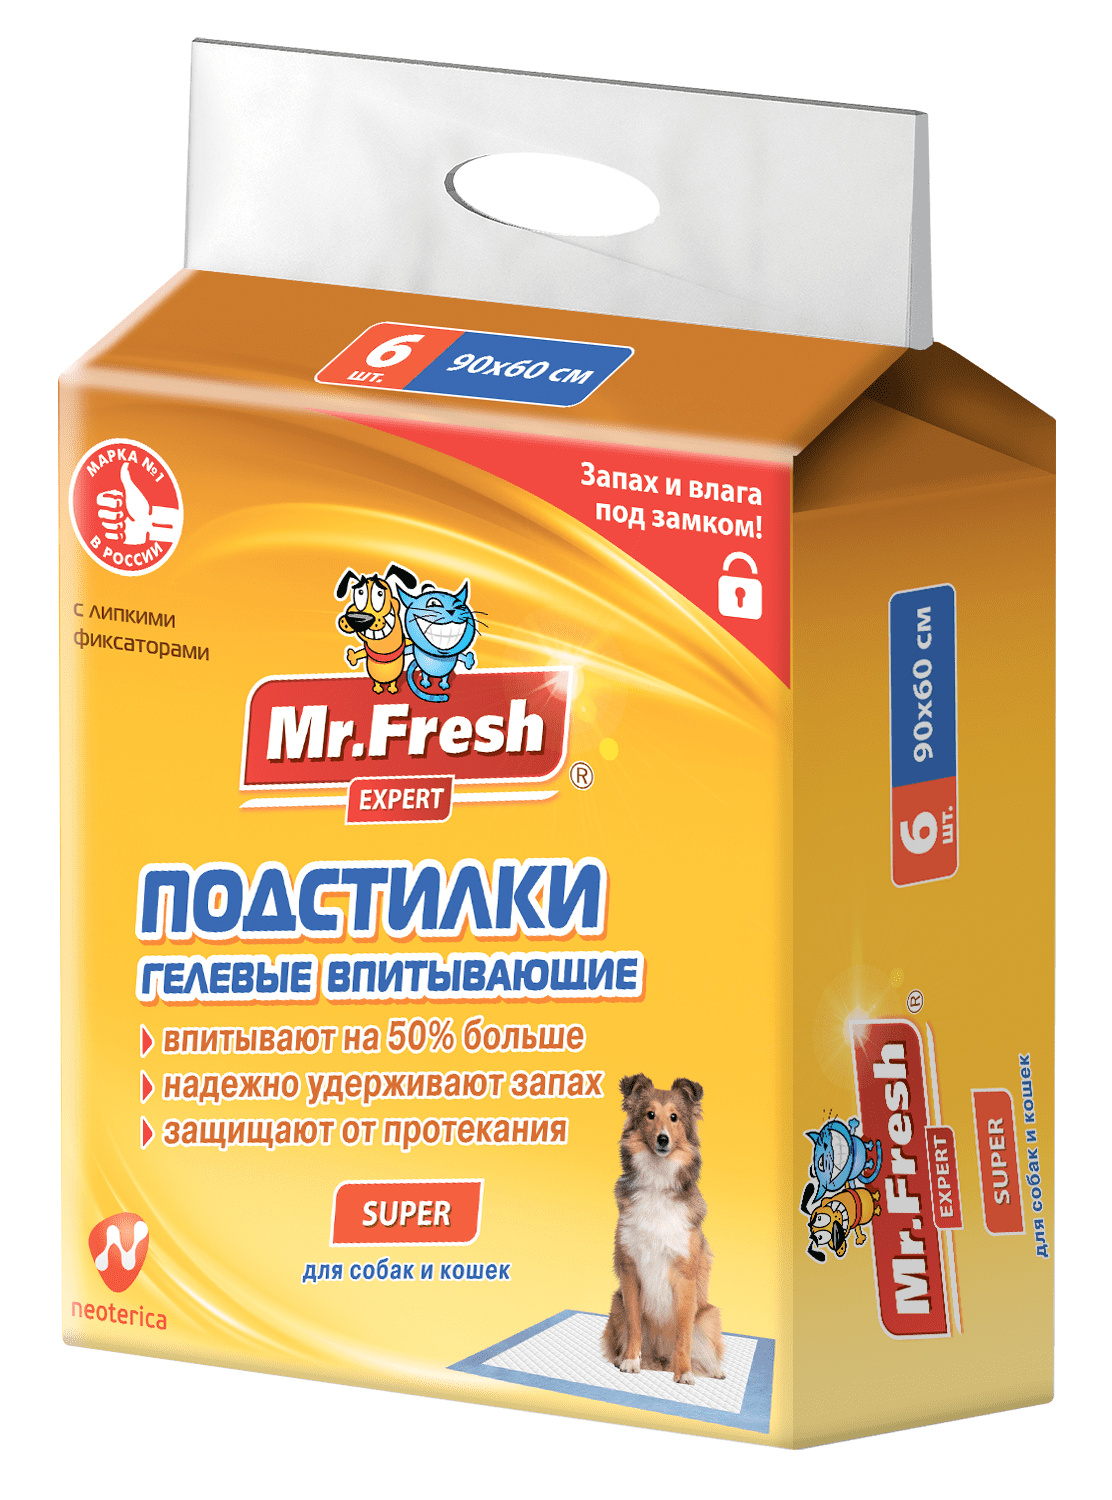 Mr.Fresh Mr.Fresh подстилка-пеленка для кошек и собак Expert Super, впитывающая, 6 шт (90*60 см)